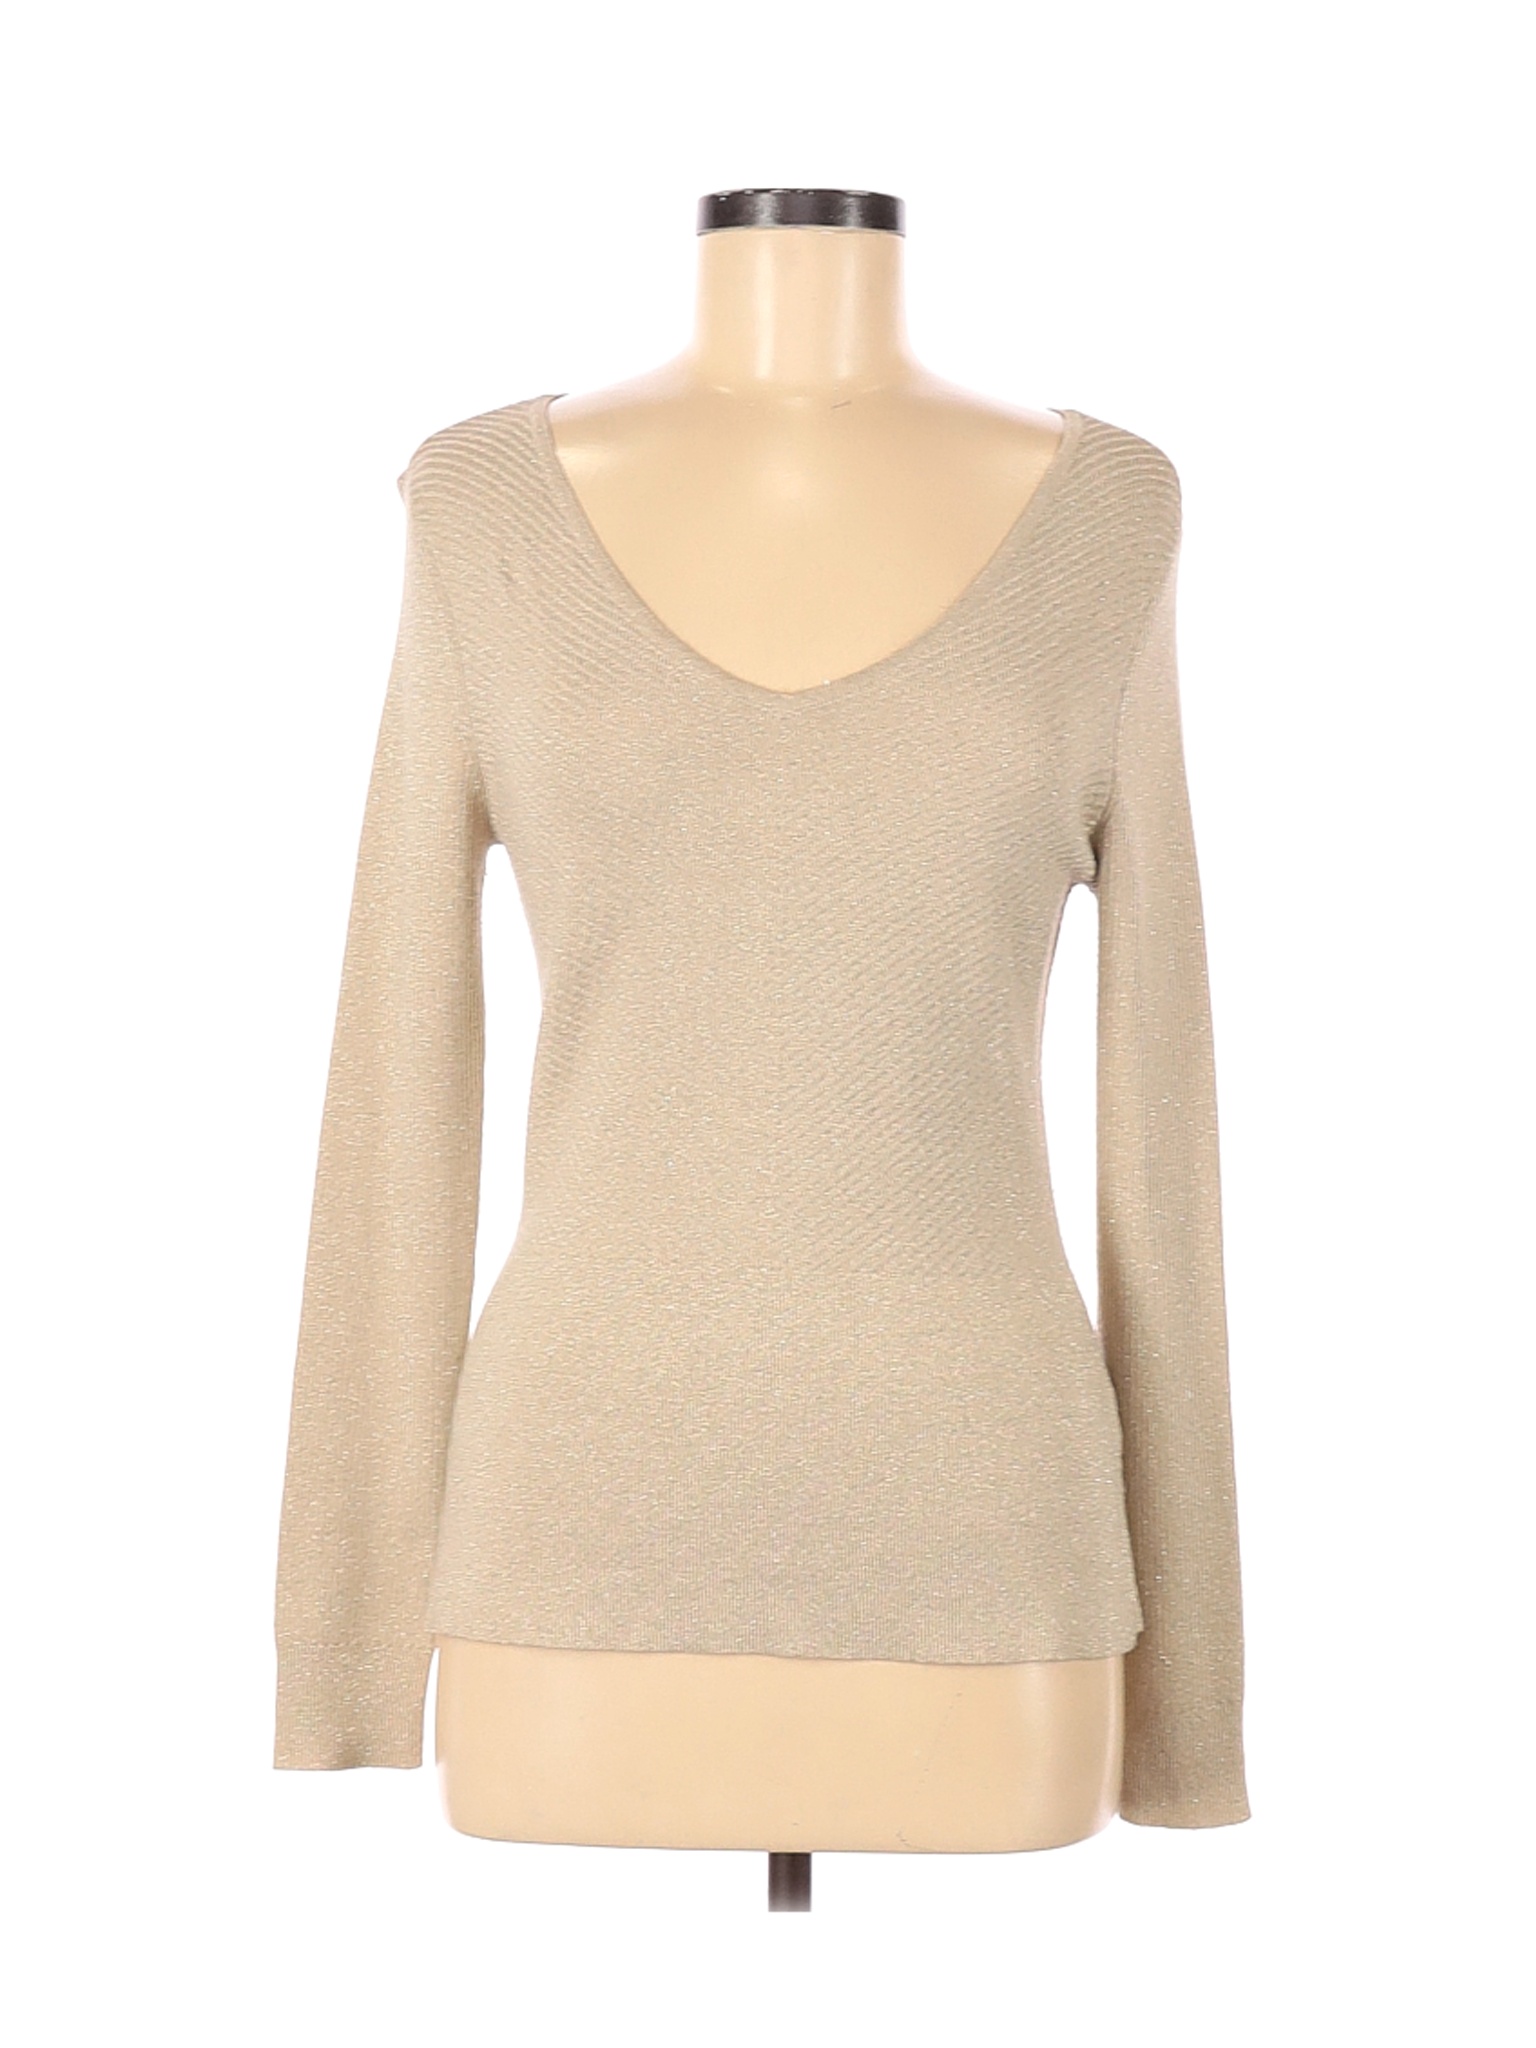 Cato Women Brown Pullover Sweater M | eBay